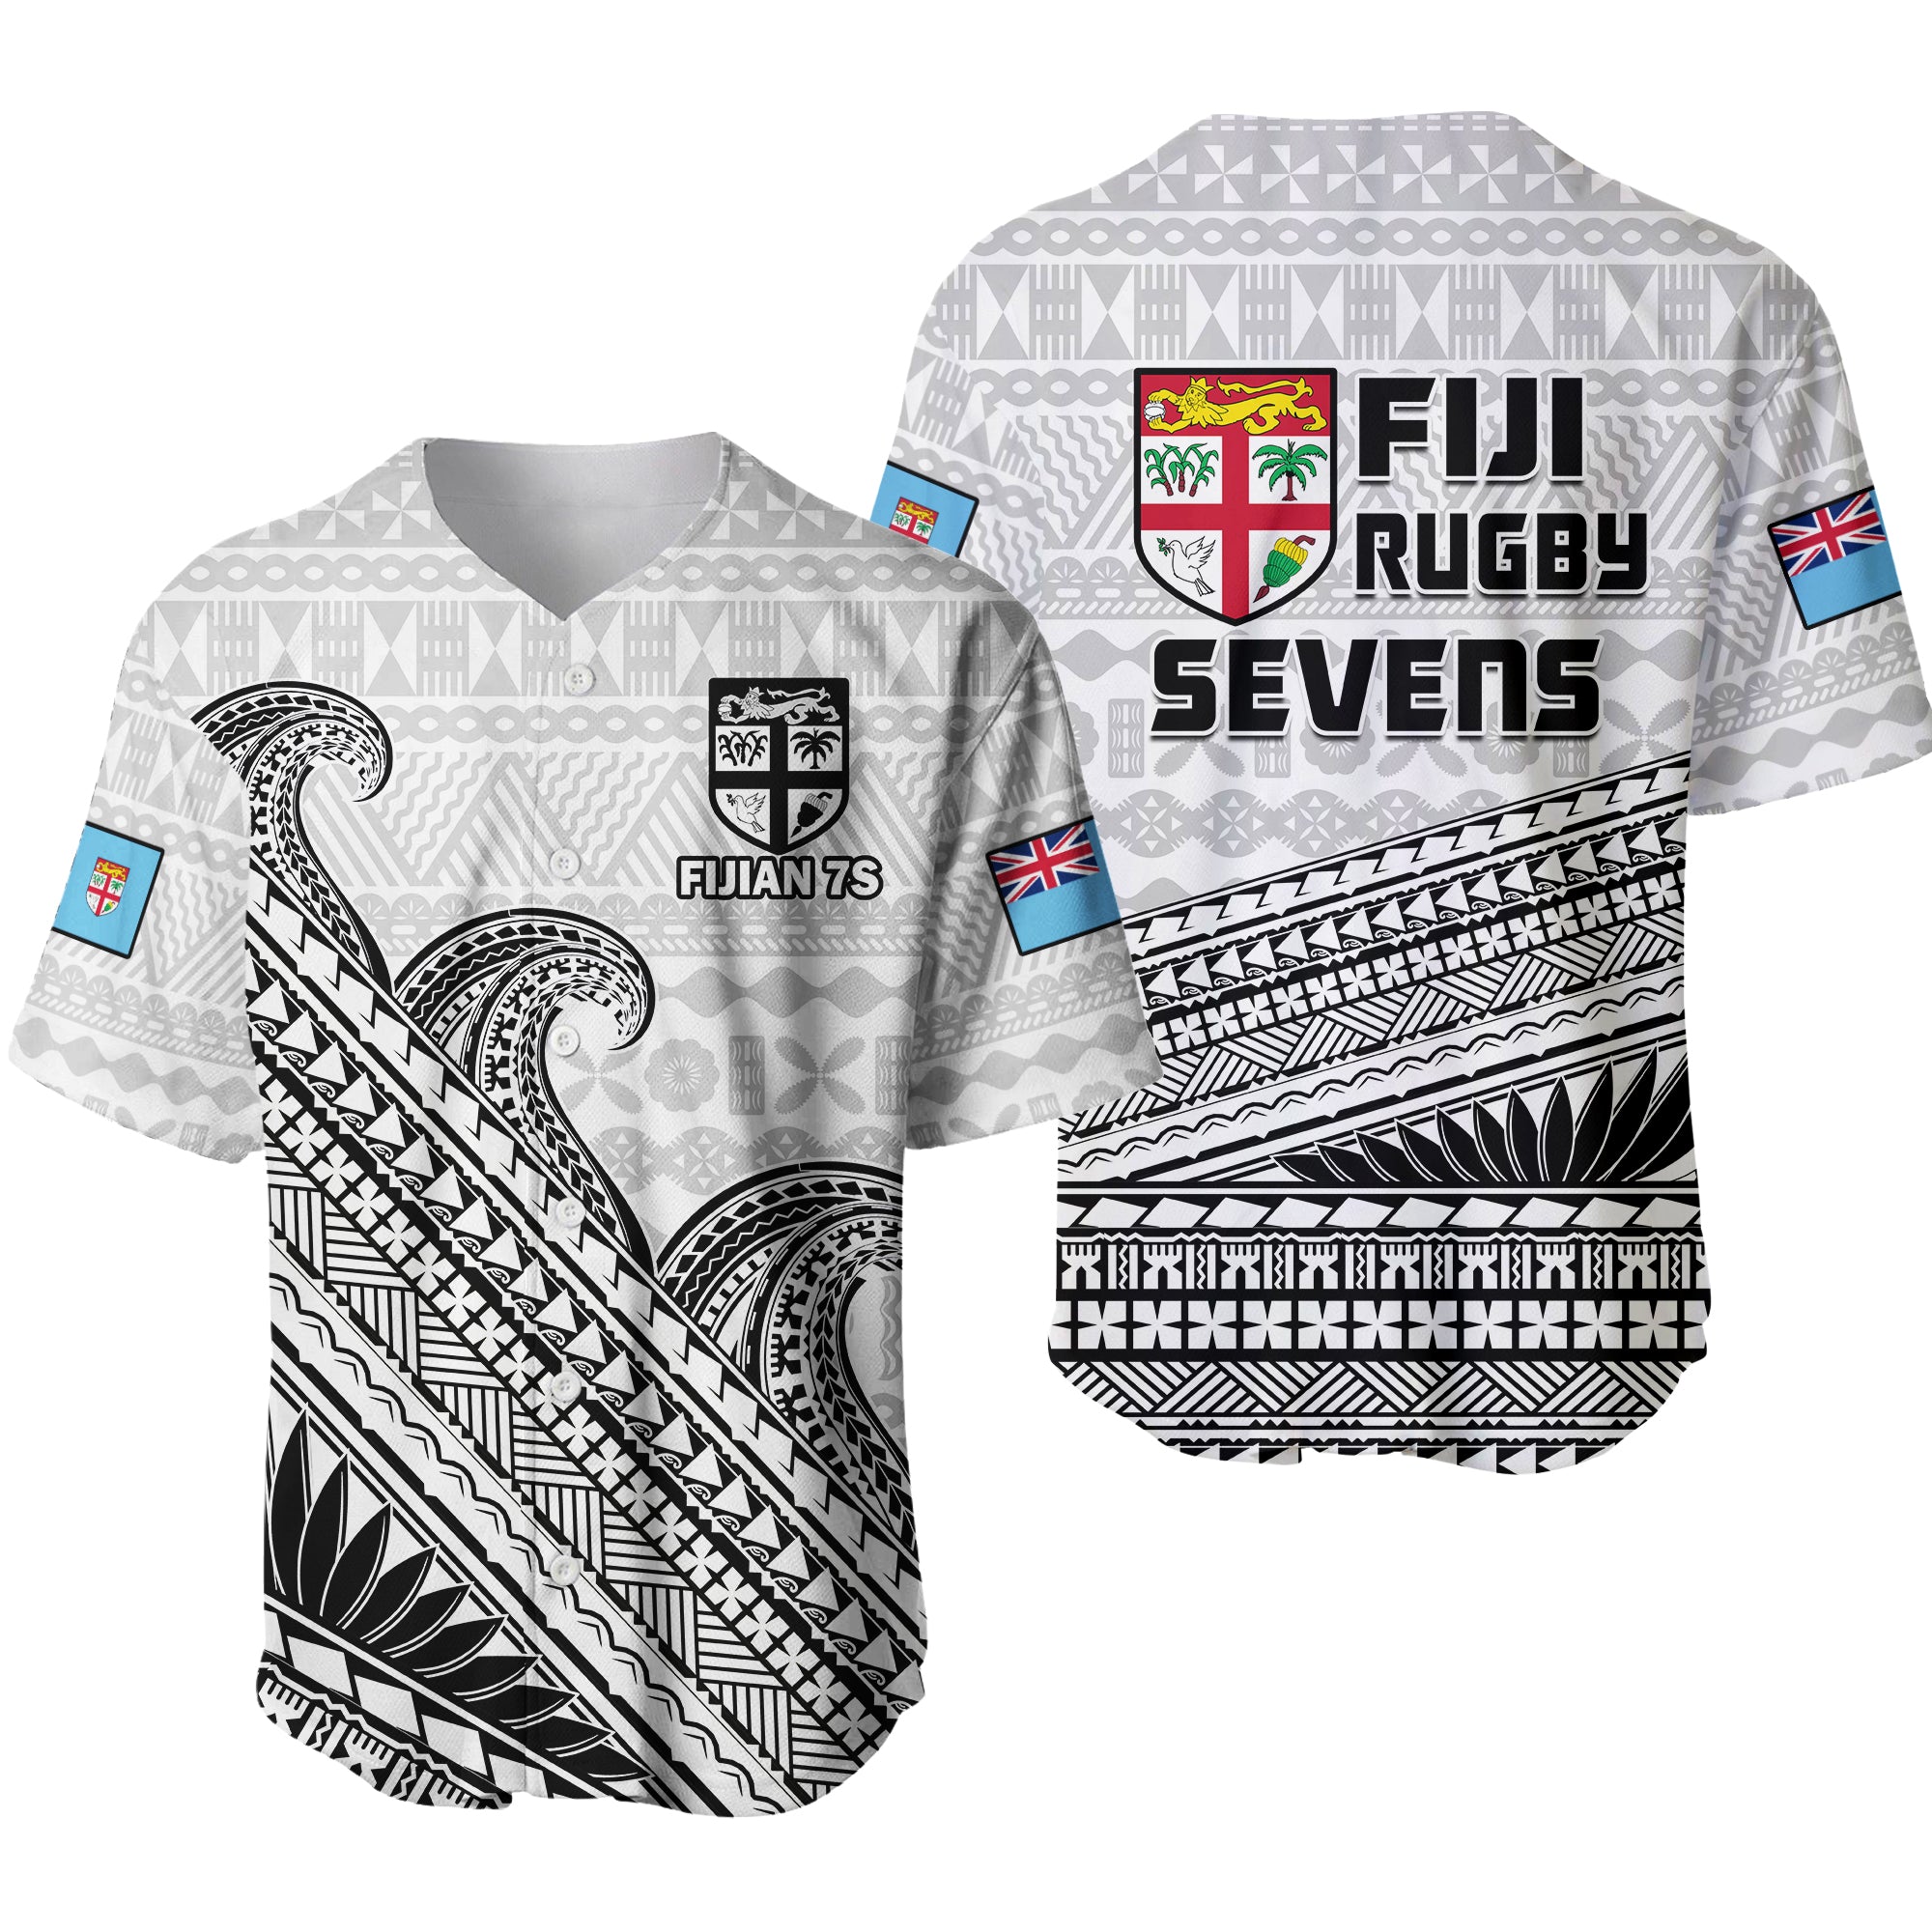 Fiji Sevens Rugby Baseball Jersey Fijian 7s Tapa Polynesian Art LT14 White - Polynesian Pride